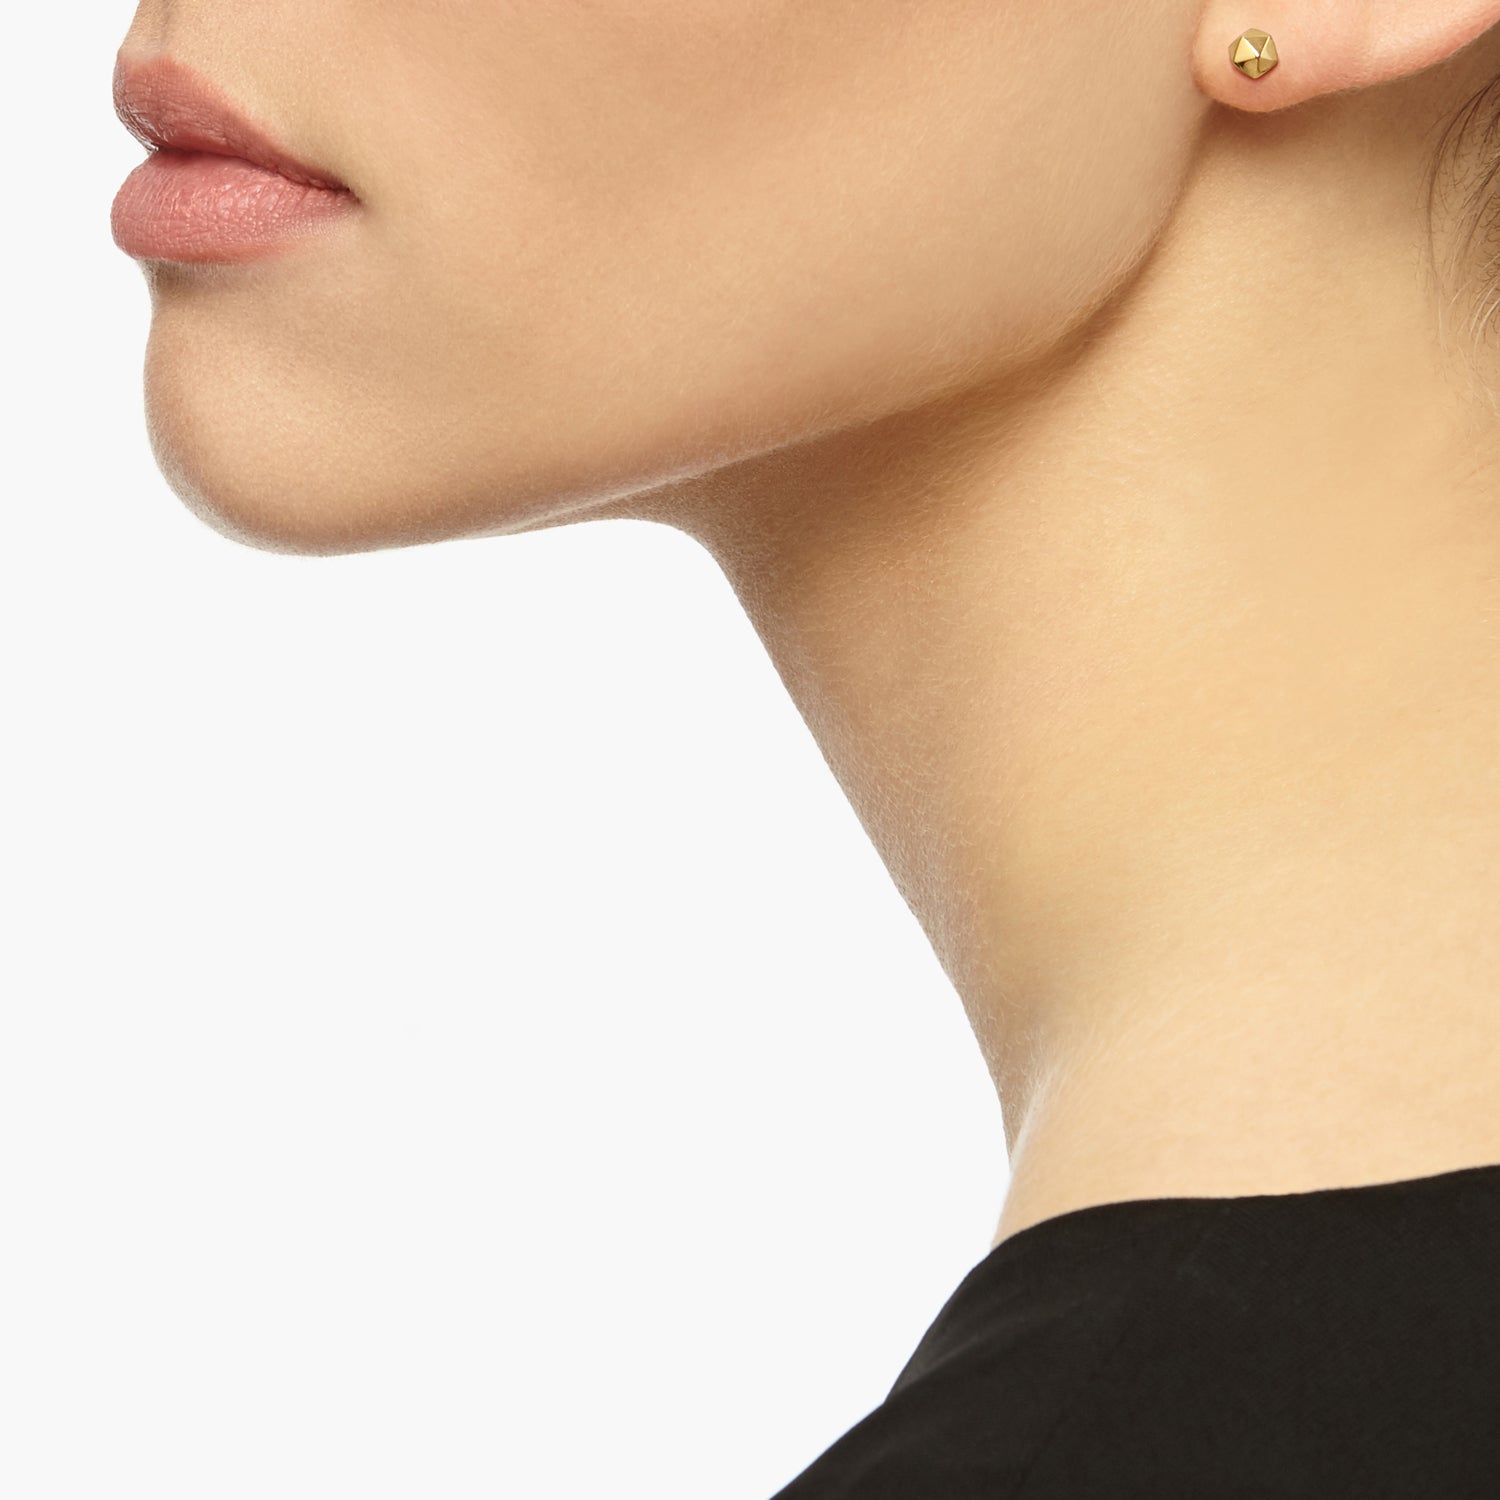 Icosahedron Stud Earrings - Gold - Myia Bonner Jewellery